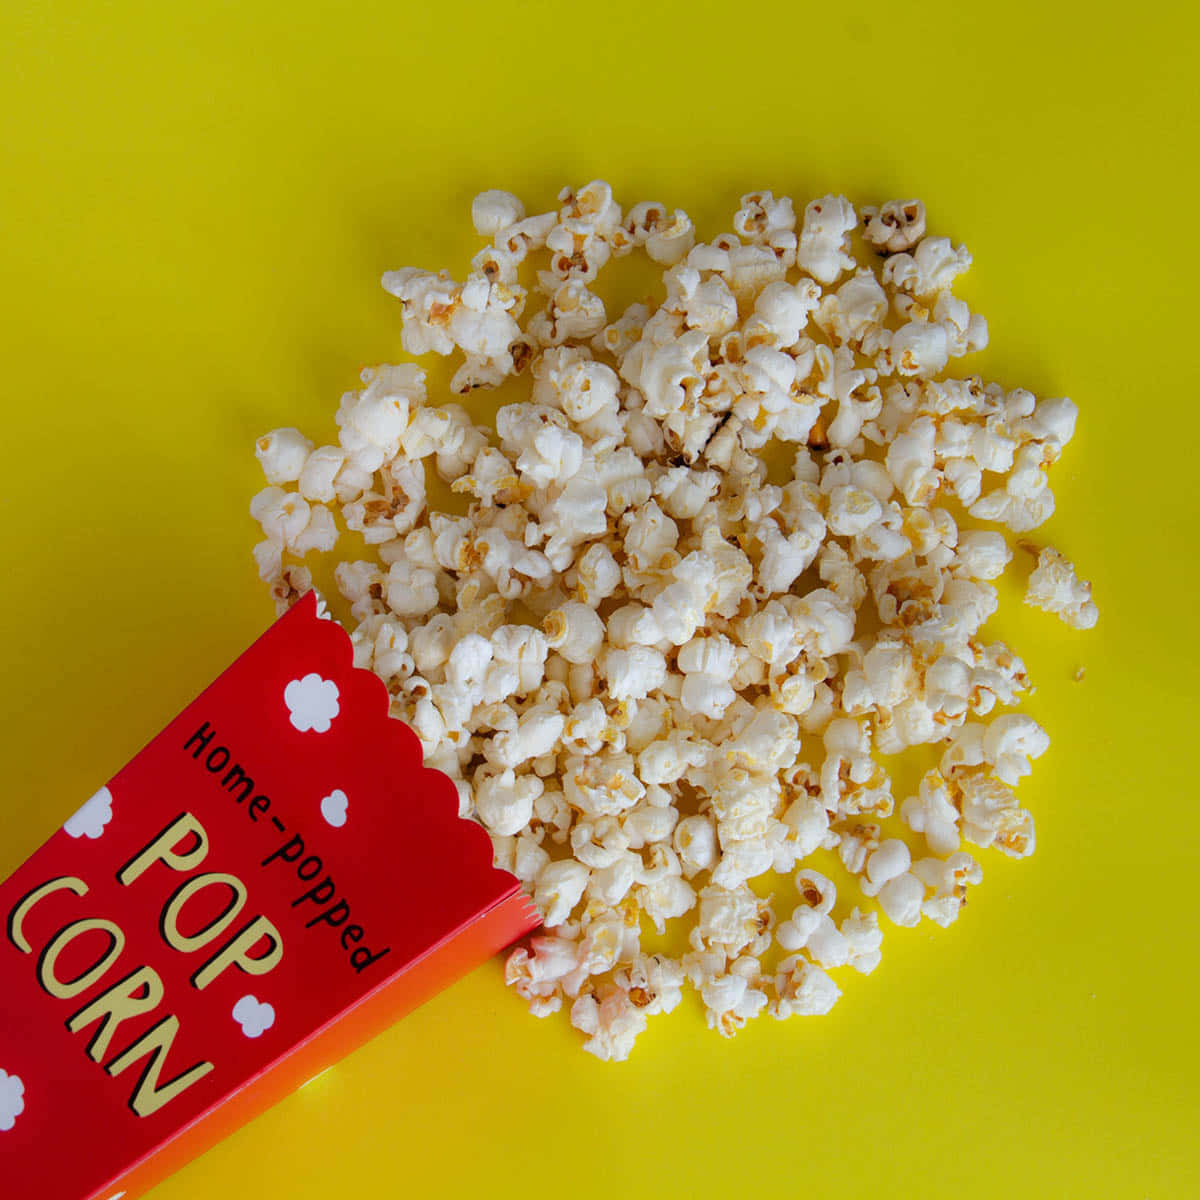 Popcornspiller På Gult Yta Bild.